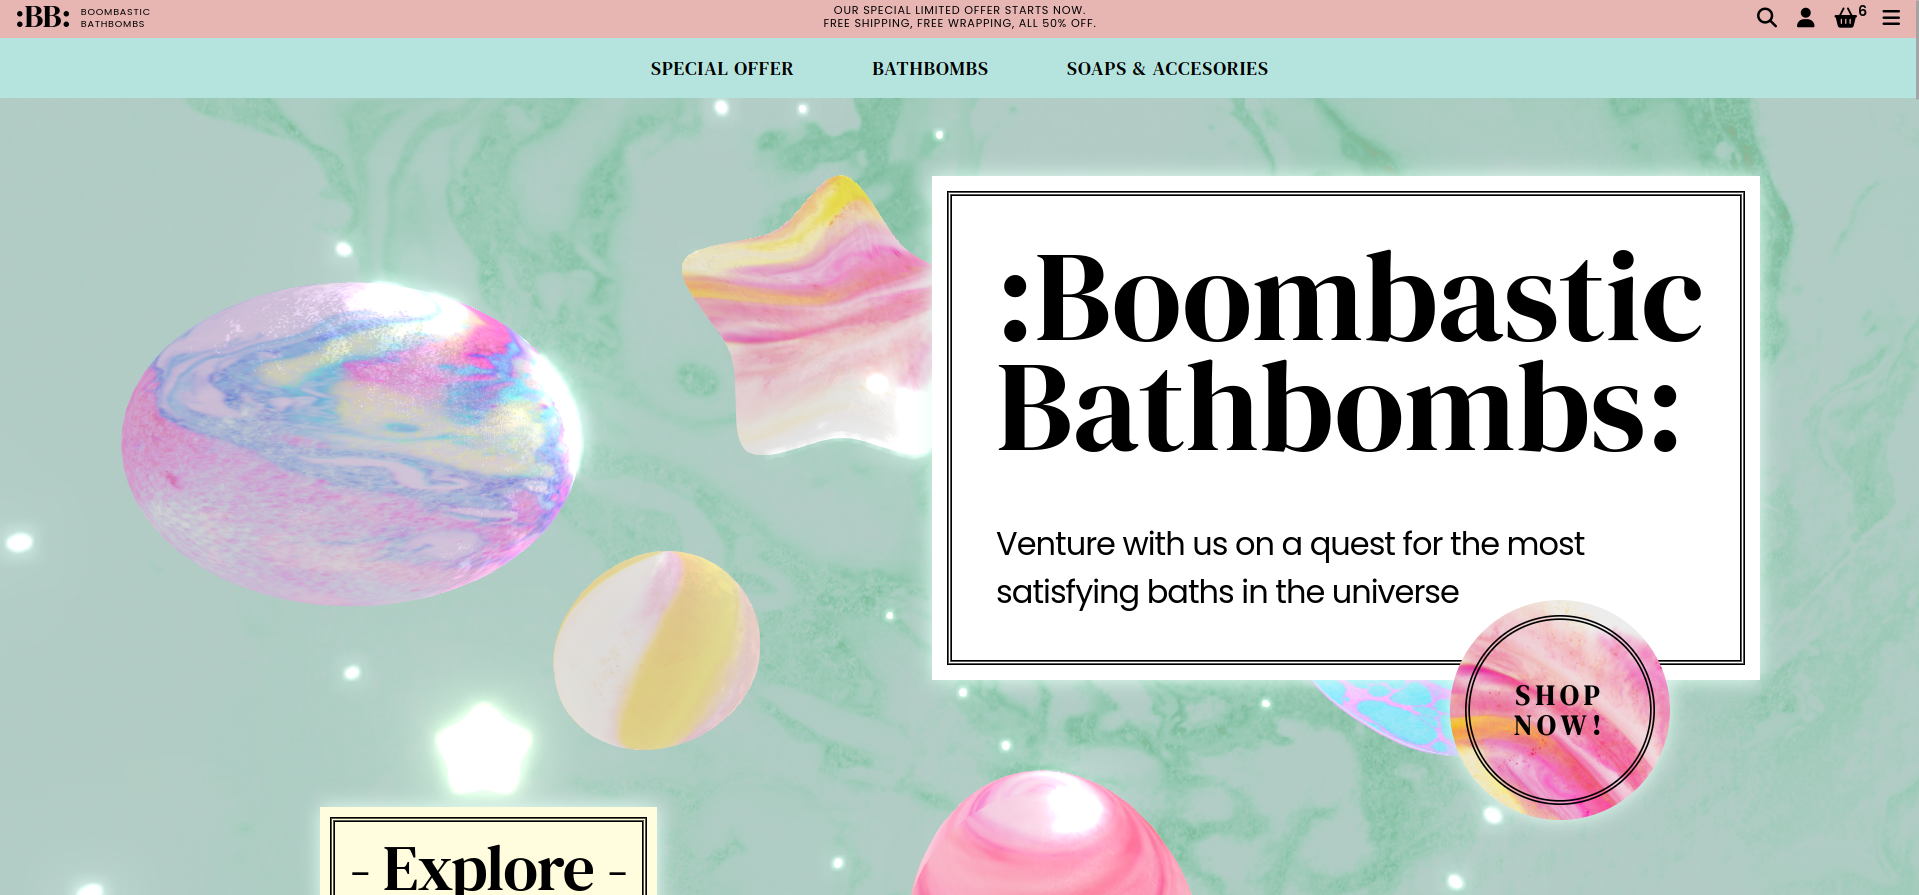 Bathbombs website screenshot